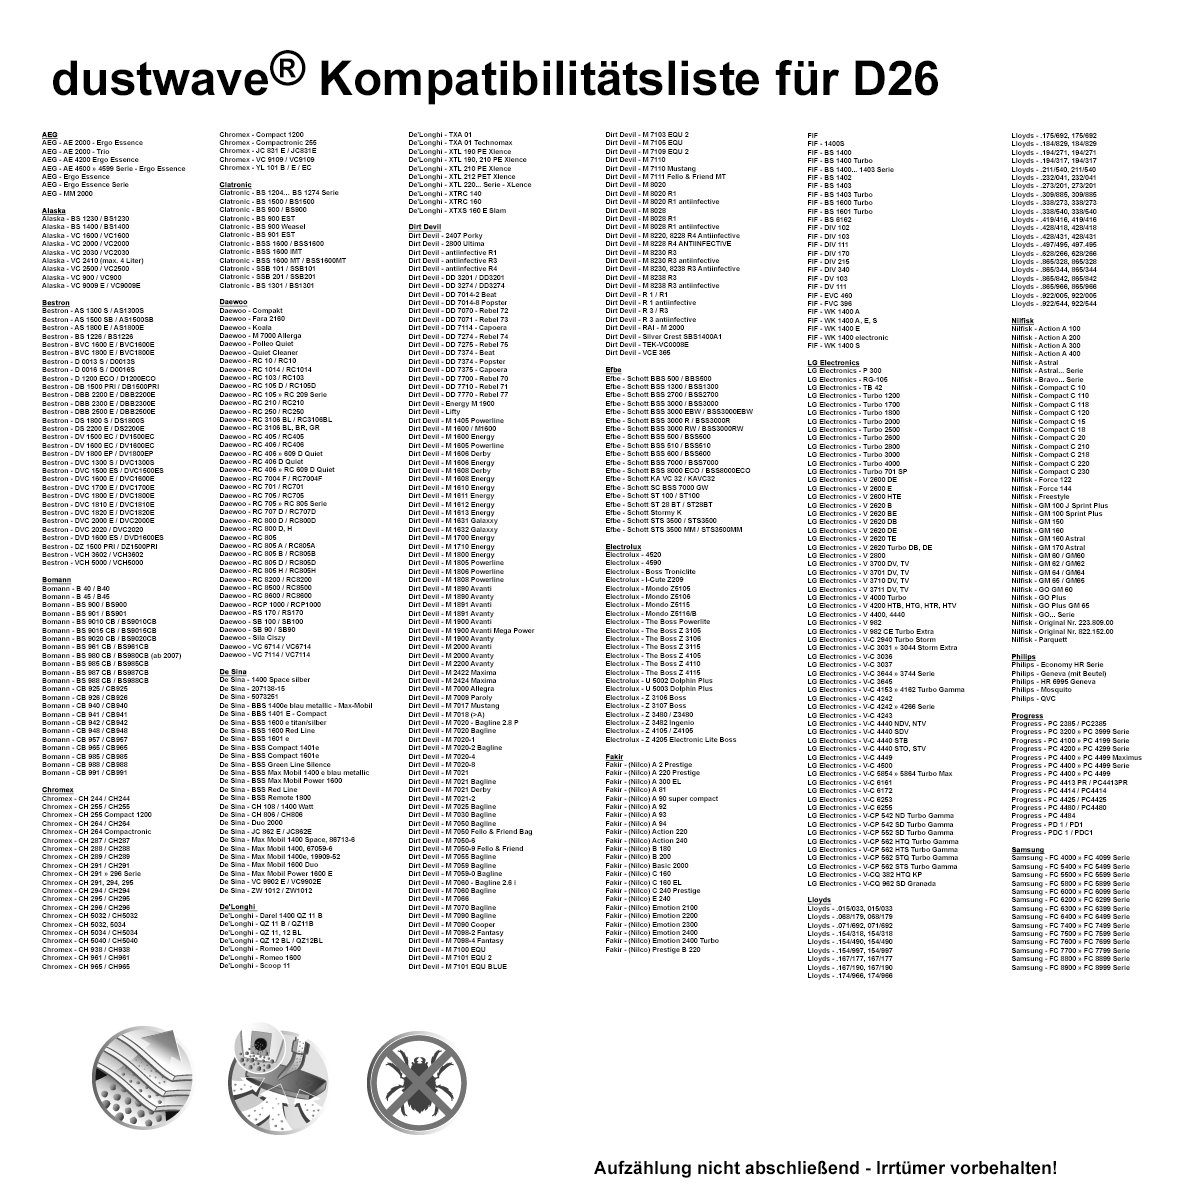 Test-Set, Staubsaugerbeutel + W.9 zuschneidbar) 1 AFK für Hepa-Filter passend Dustwave BS AFK Staubsaugerbeutel 2000 (ca. - Standard Test-Set, - 2000 15x15cm 1 BS St., 1 W.9,